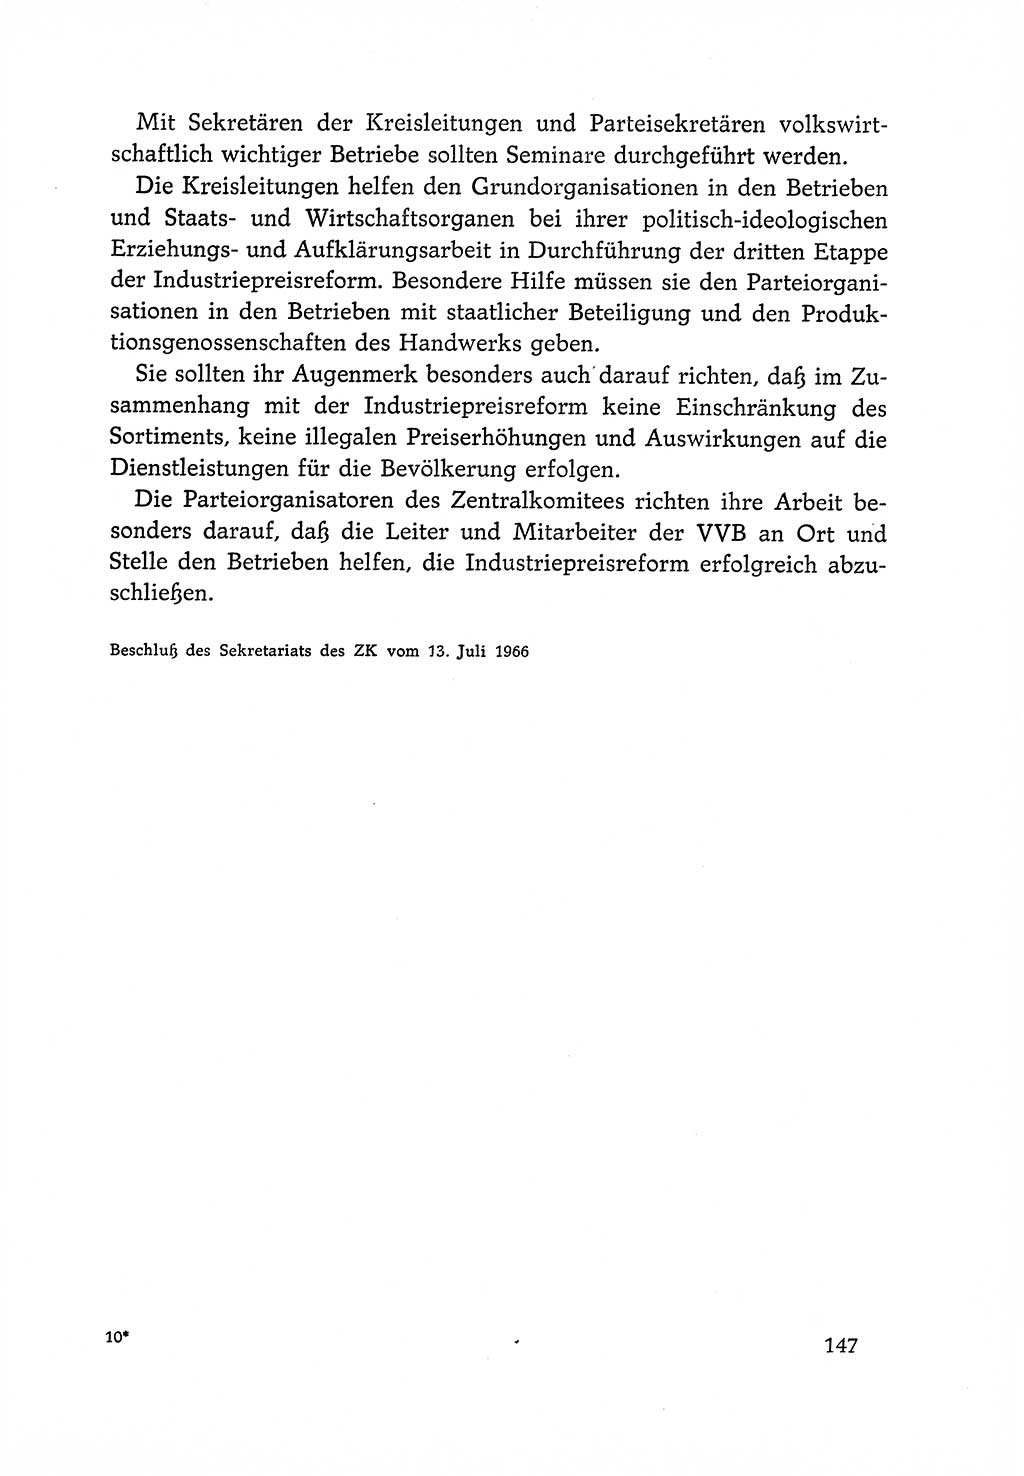 Dokumente der Sozialistischen Einheitspartei Deutschlands (SED) [Deutsche Demokratische Republik (DDR)] 1966-1967, Seite 147 (Dok. SED DDR 1966-1967, S. 147)